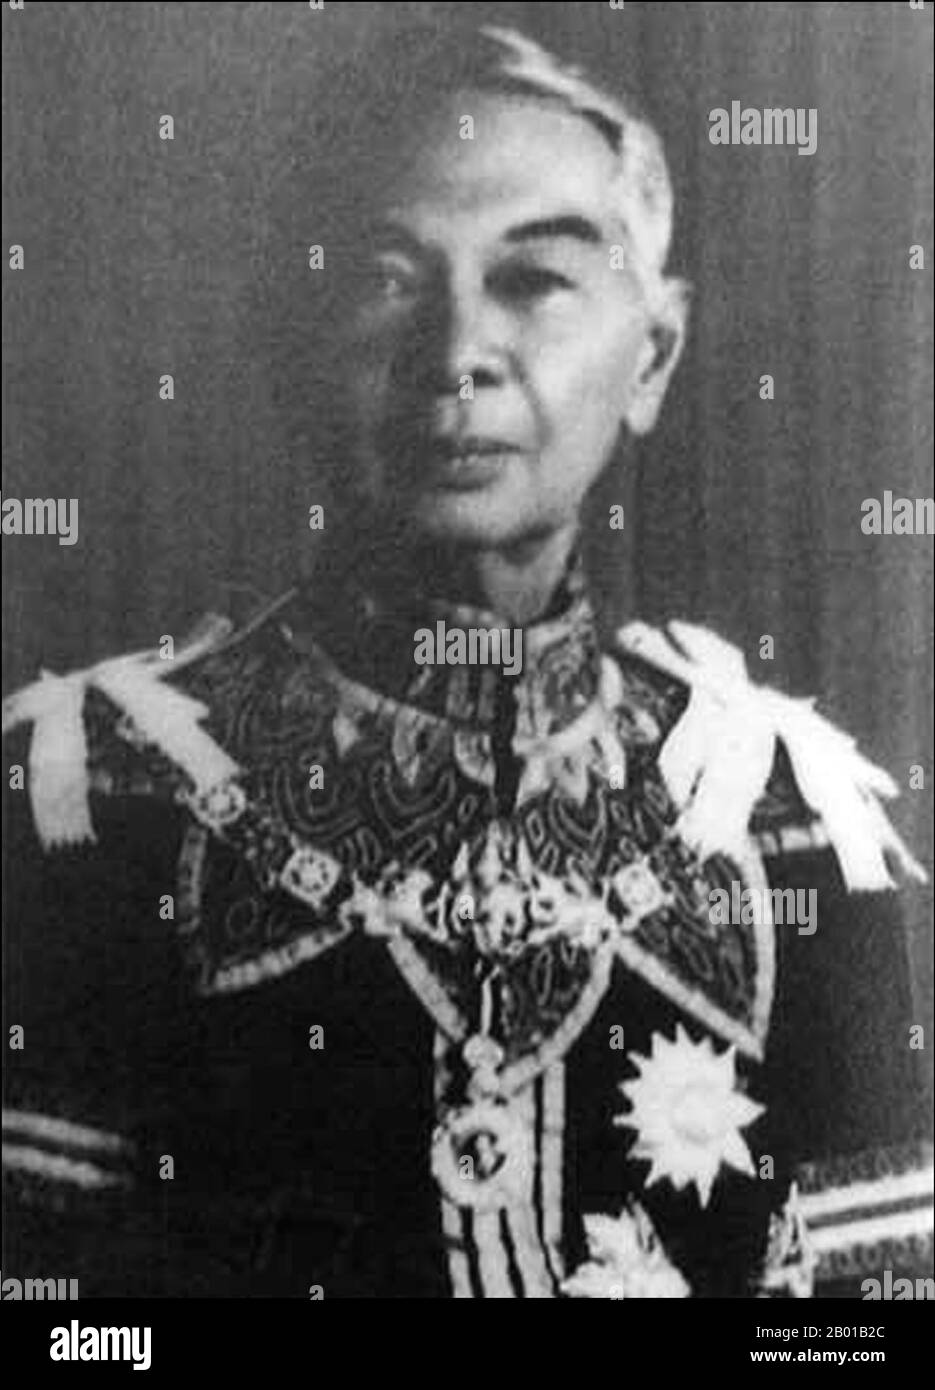 Thailand: Mama Rajawongse Seni Pramoj (26. Mai 1905 - 28. Juli 1997), Premierministerin von Thailand (r. 1945-1946; 15. Februar 1975 - 13. März 1975; 20. April 1976 - 6. Oktober 1976), c. 1960s. Mutter Rajawongse Seni Pramoj war dreimal Premierministerin und Politikerin in der Demokratischen Partei. Als Mitglied der thailändischen Königsfamilie war er ein Nachkomme von König Rama II. Senis letzte Amtszeit war eine Zeit der Krise in der Nation. Eine rechtsgerichtete Gegenreaktion gegen linke Studentendemonstranten gipfelte am 6. Oktober 1976 im Massaker an der Thammasat-Universität, und das Militär zwang ihn aus dem Amt. Stockfoto